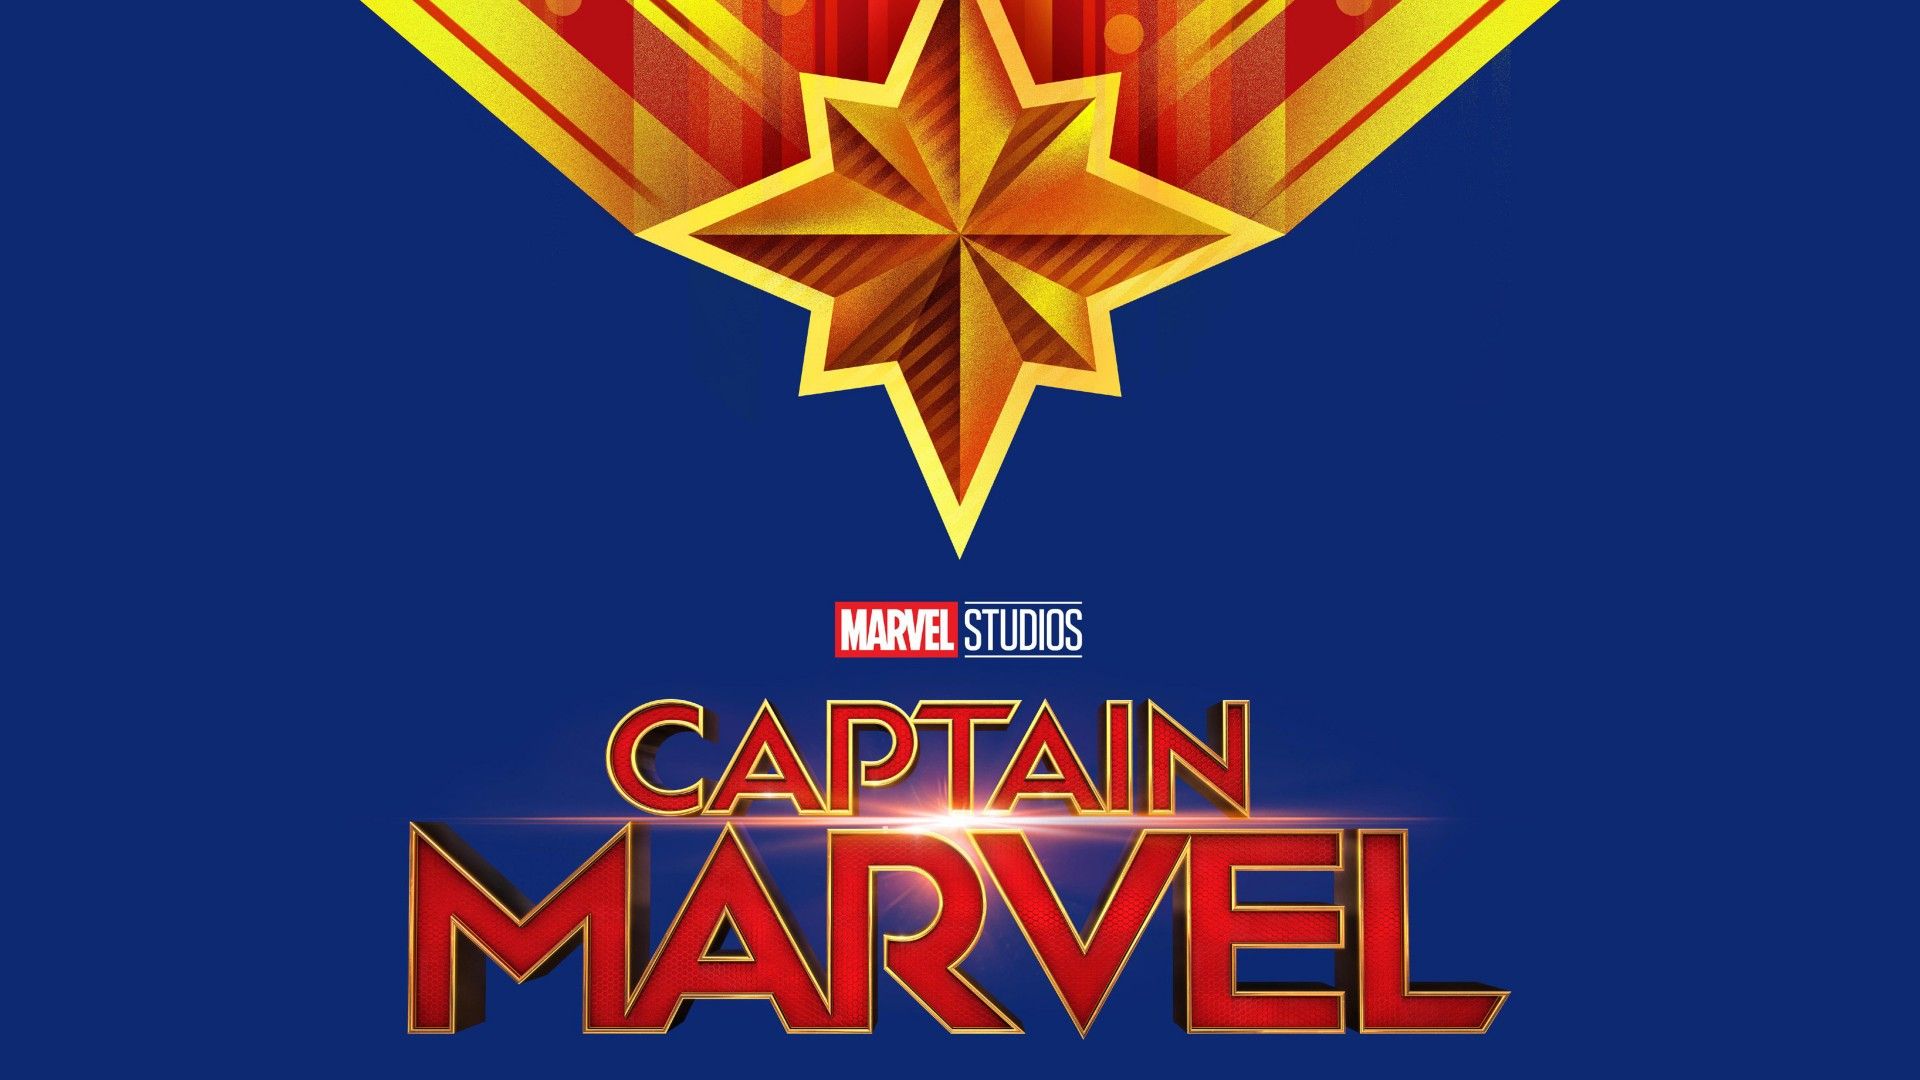 Marvel Studios Captain Marvel Movie Logo Wallpaper